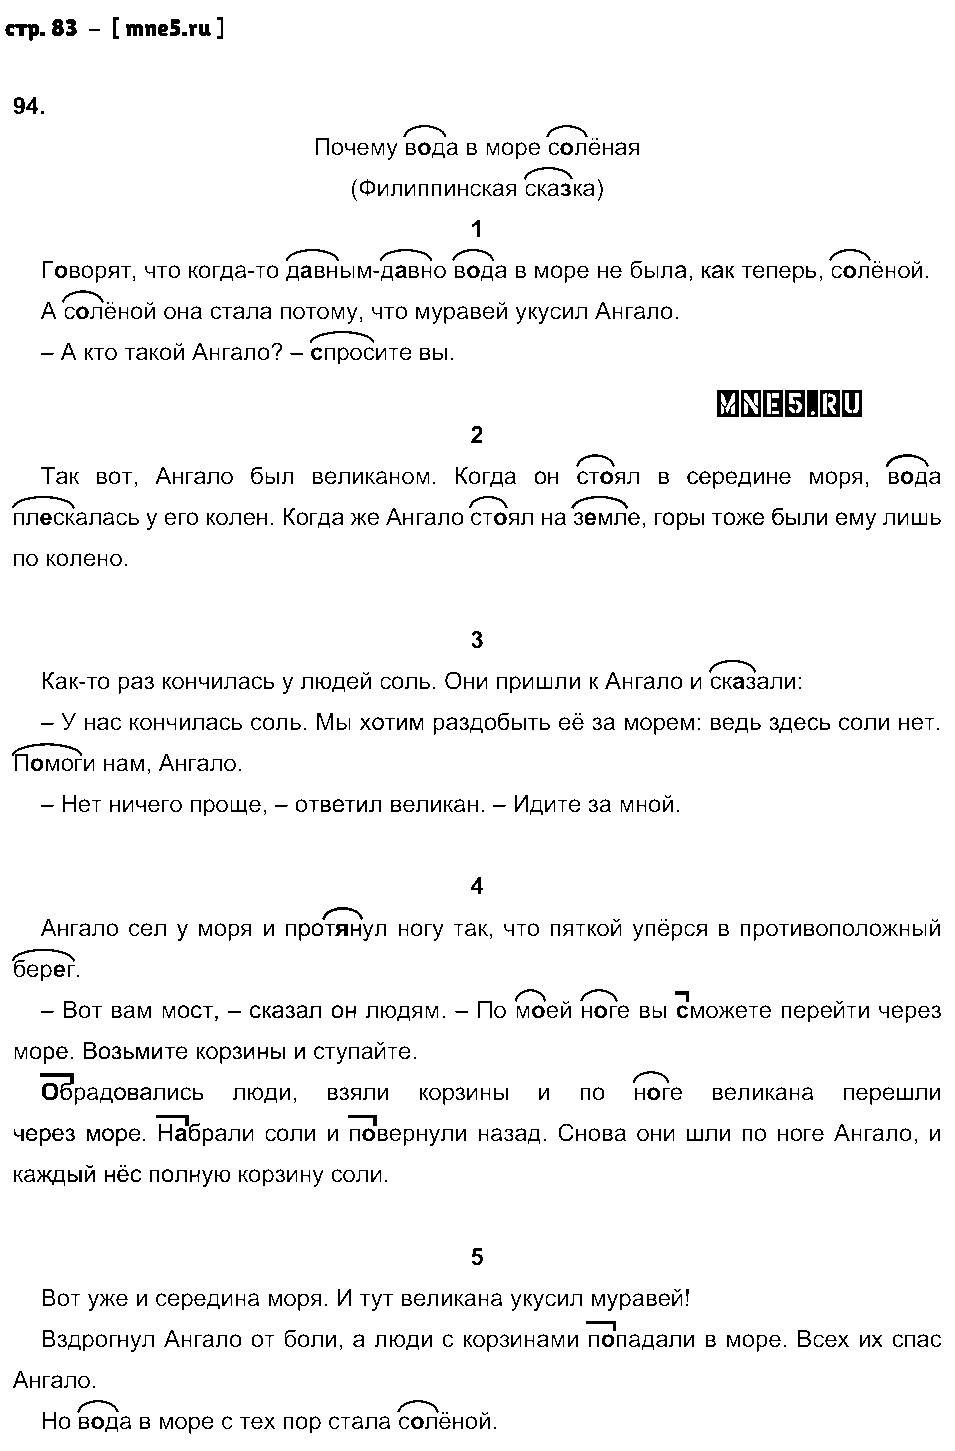 ГДЗ Русский язык 2 класс - стр. 83